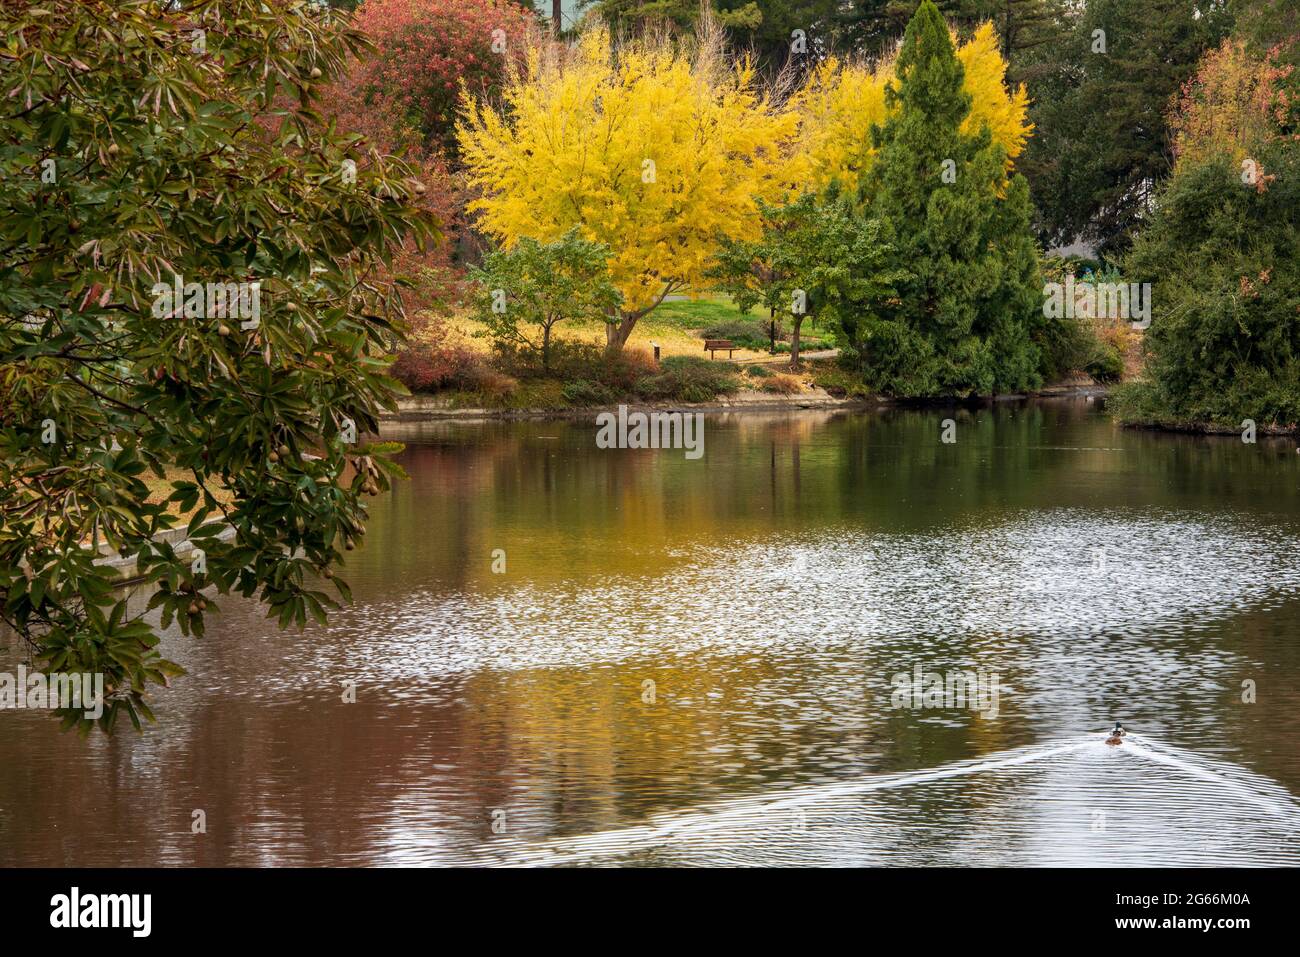 Arbre coloré à l'arboretum UC Davis à l'automne se reflète sur le lac Spafford, avec un arbre jaune de ginkgo biloba Banque D'Images